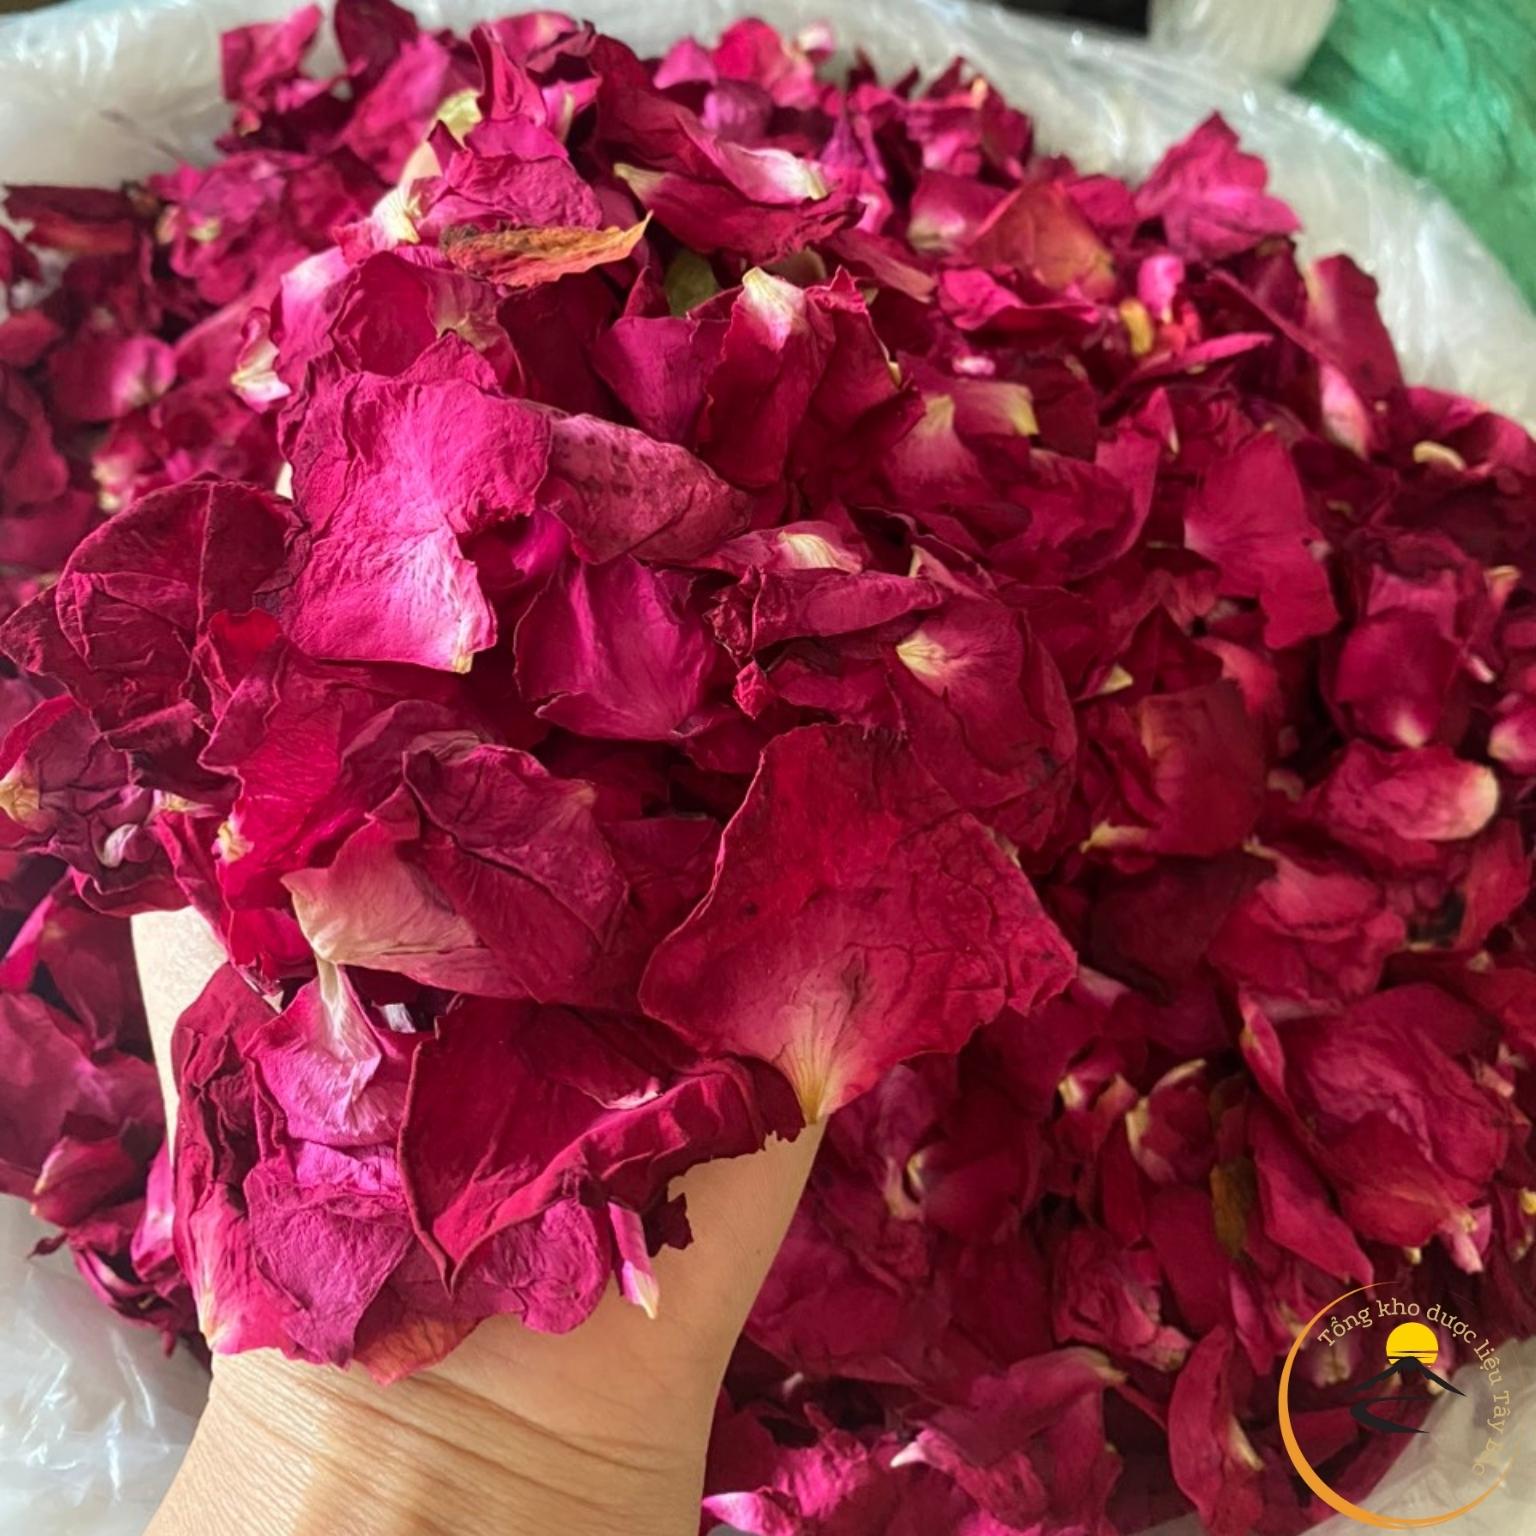 Cánh hoa hồng khô Đà Lạt 1kg sấy lạnh thượng hạng dùng uống trà, thả bồn tắm, trang trí, decor, làm bánh, spa, ngâm chân thảo mộc